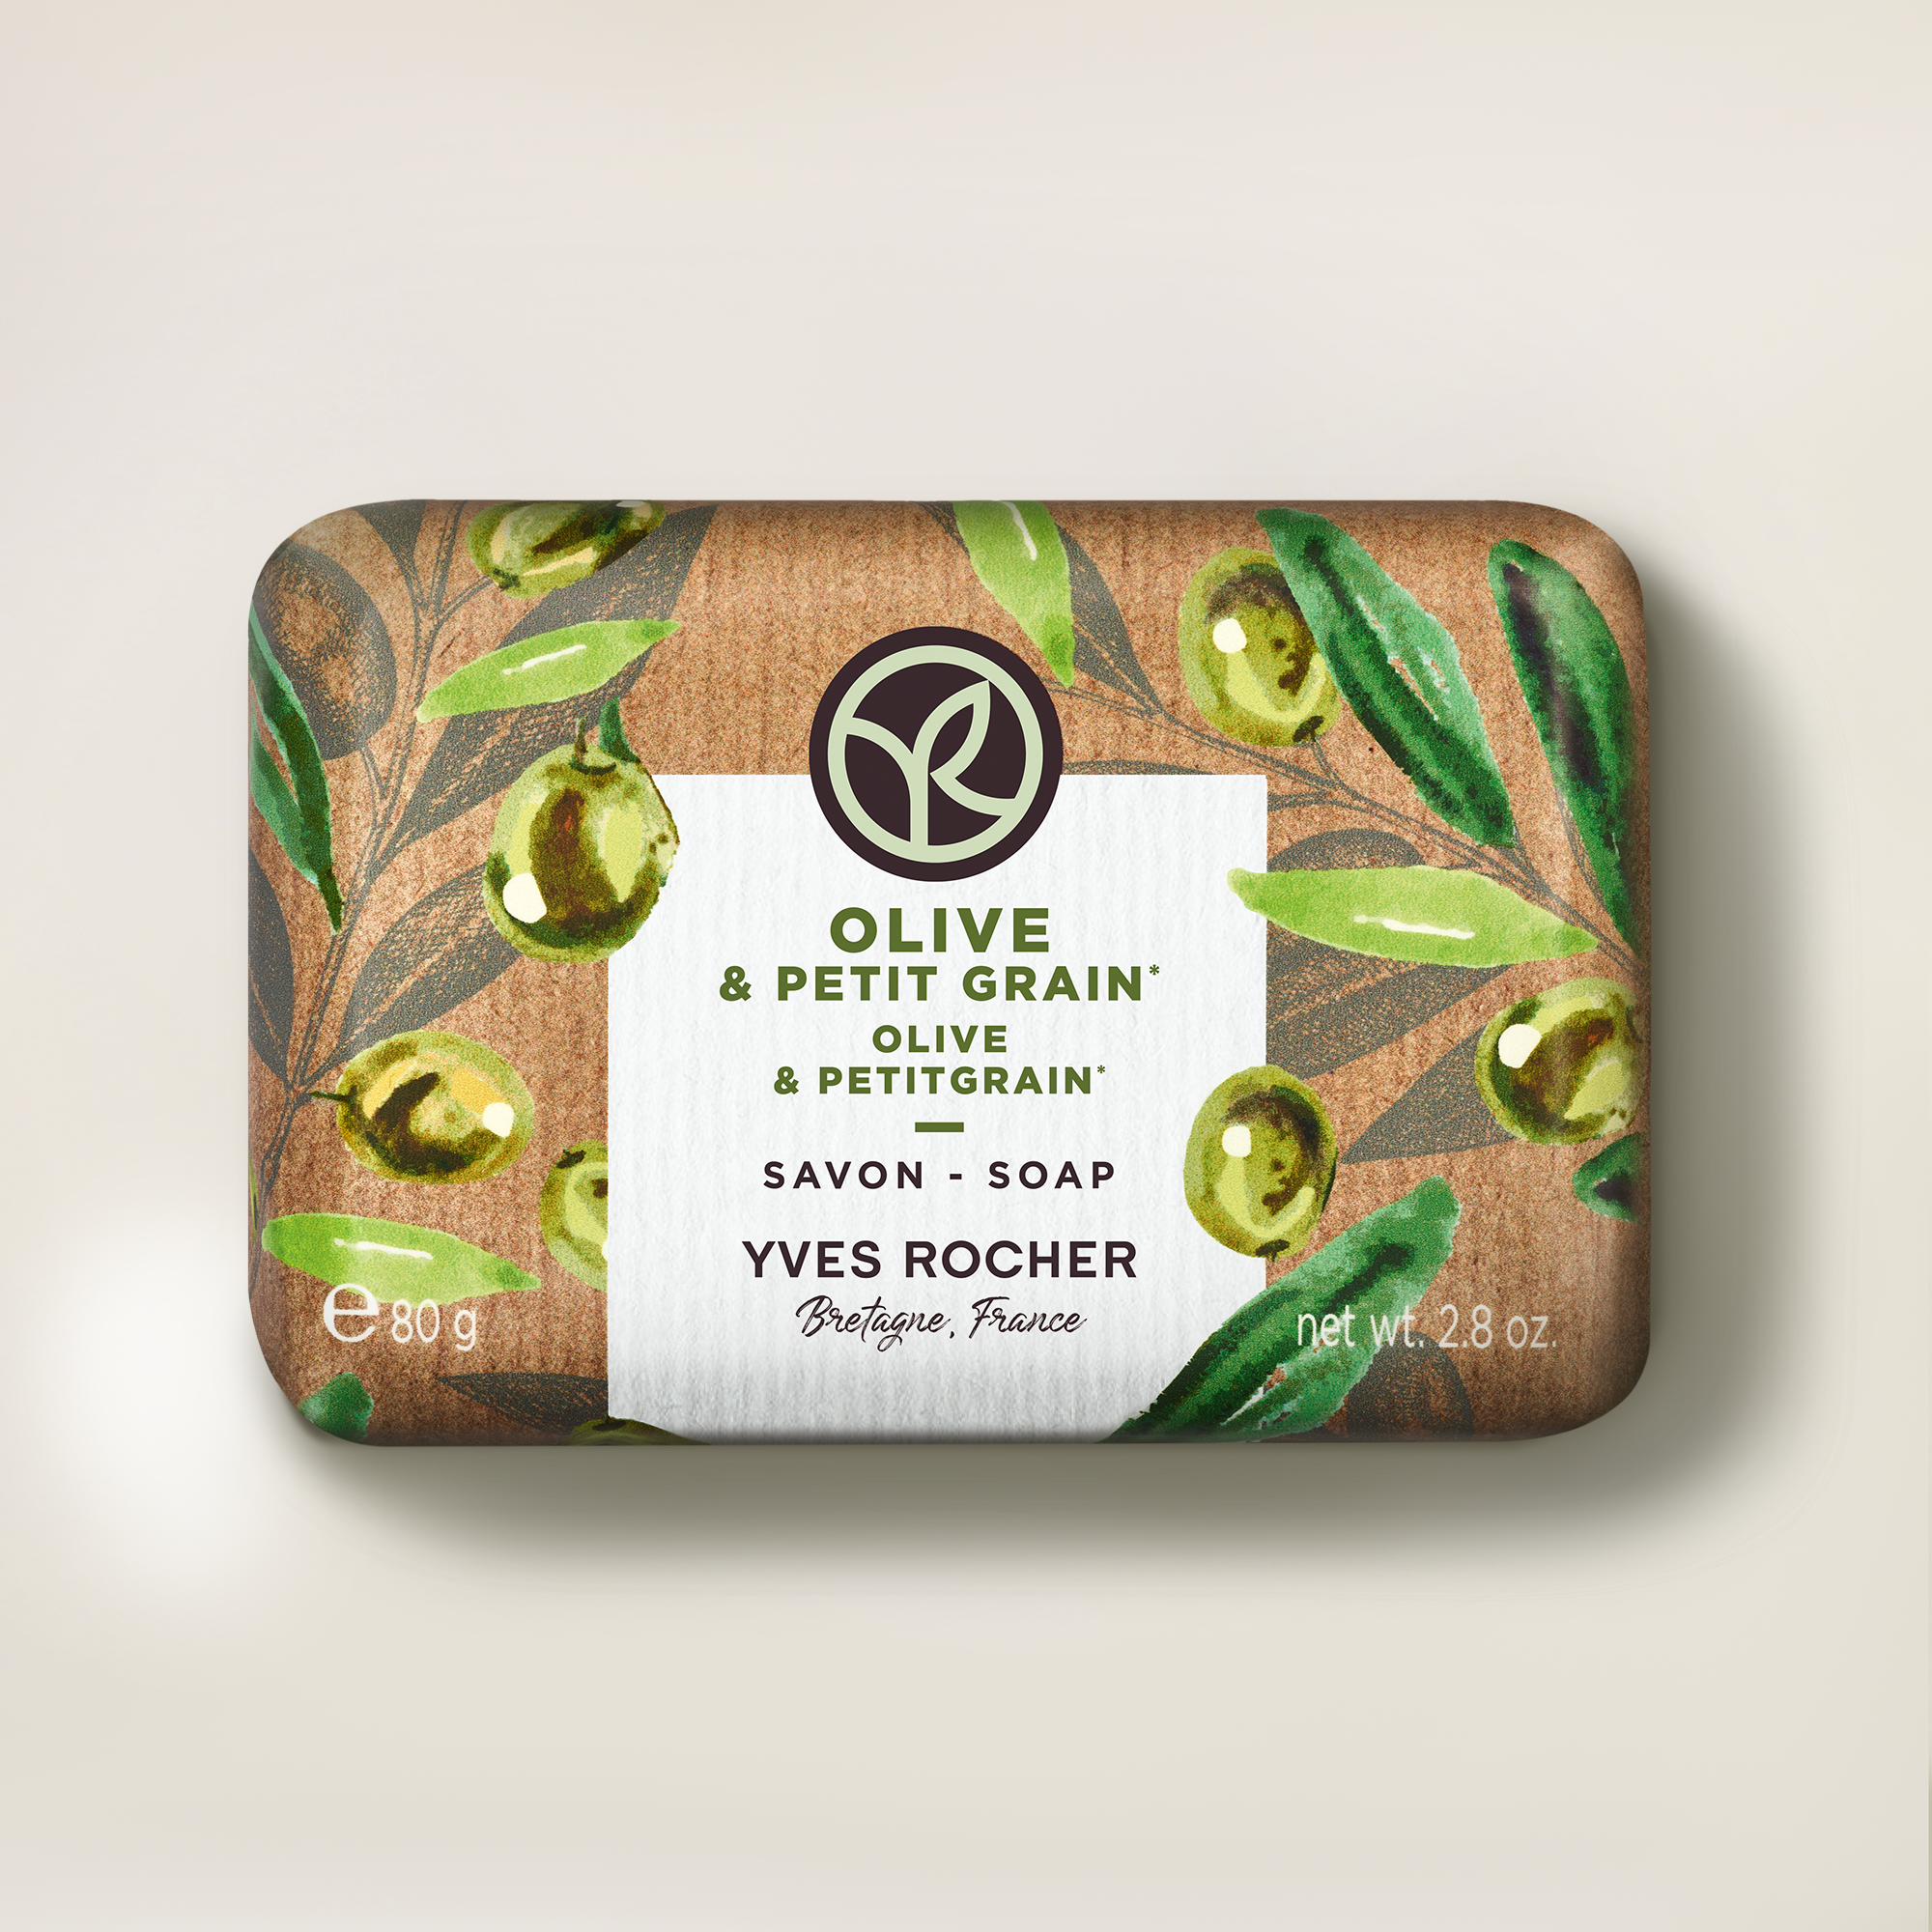 Olive & Petitgrain Soap